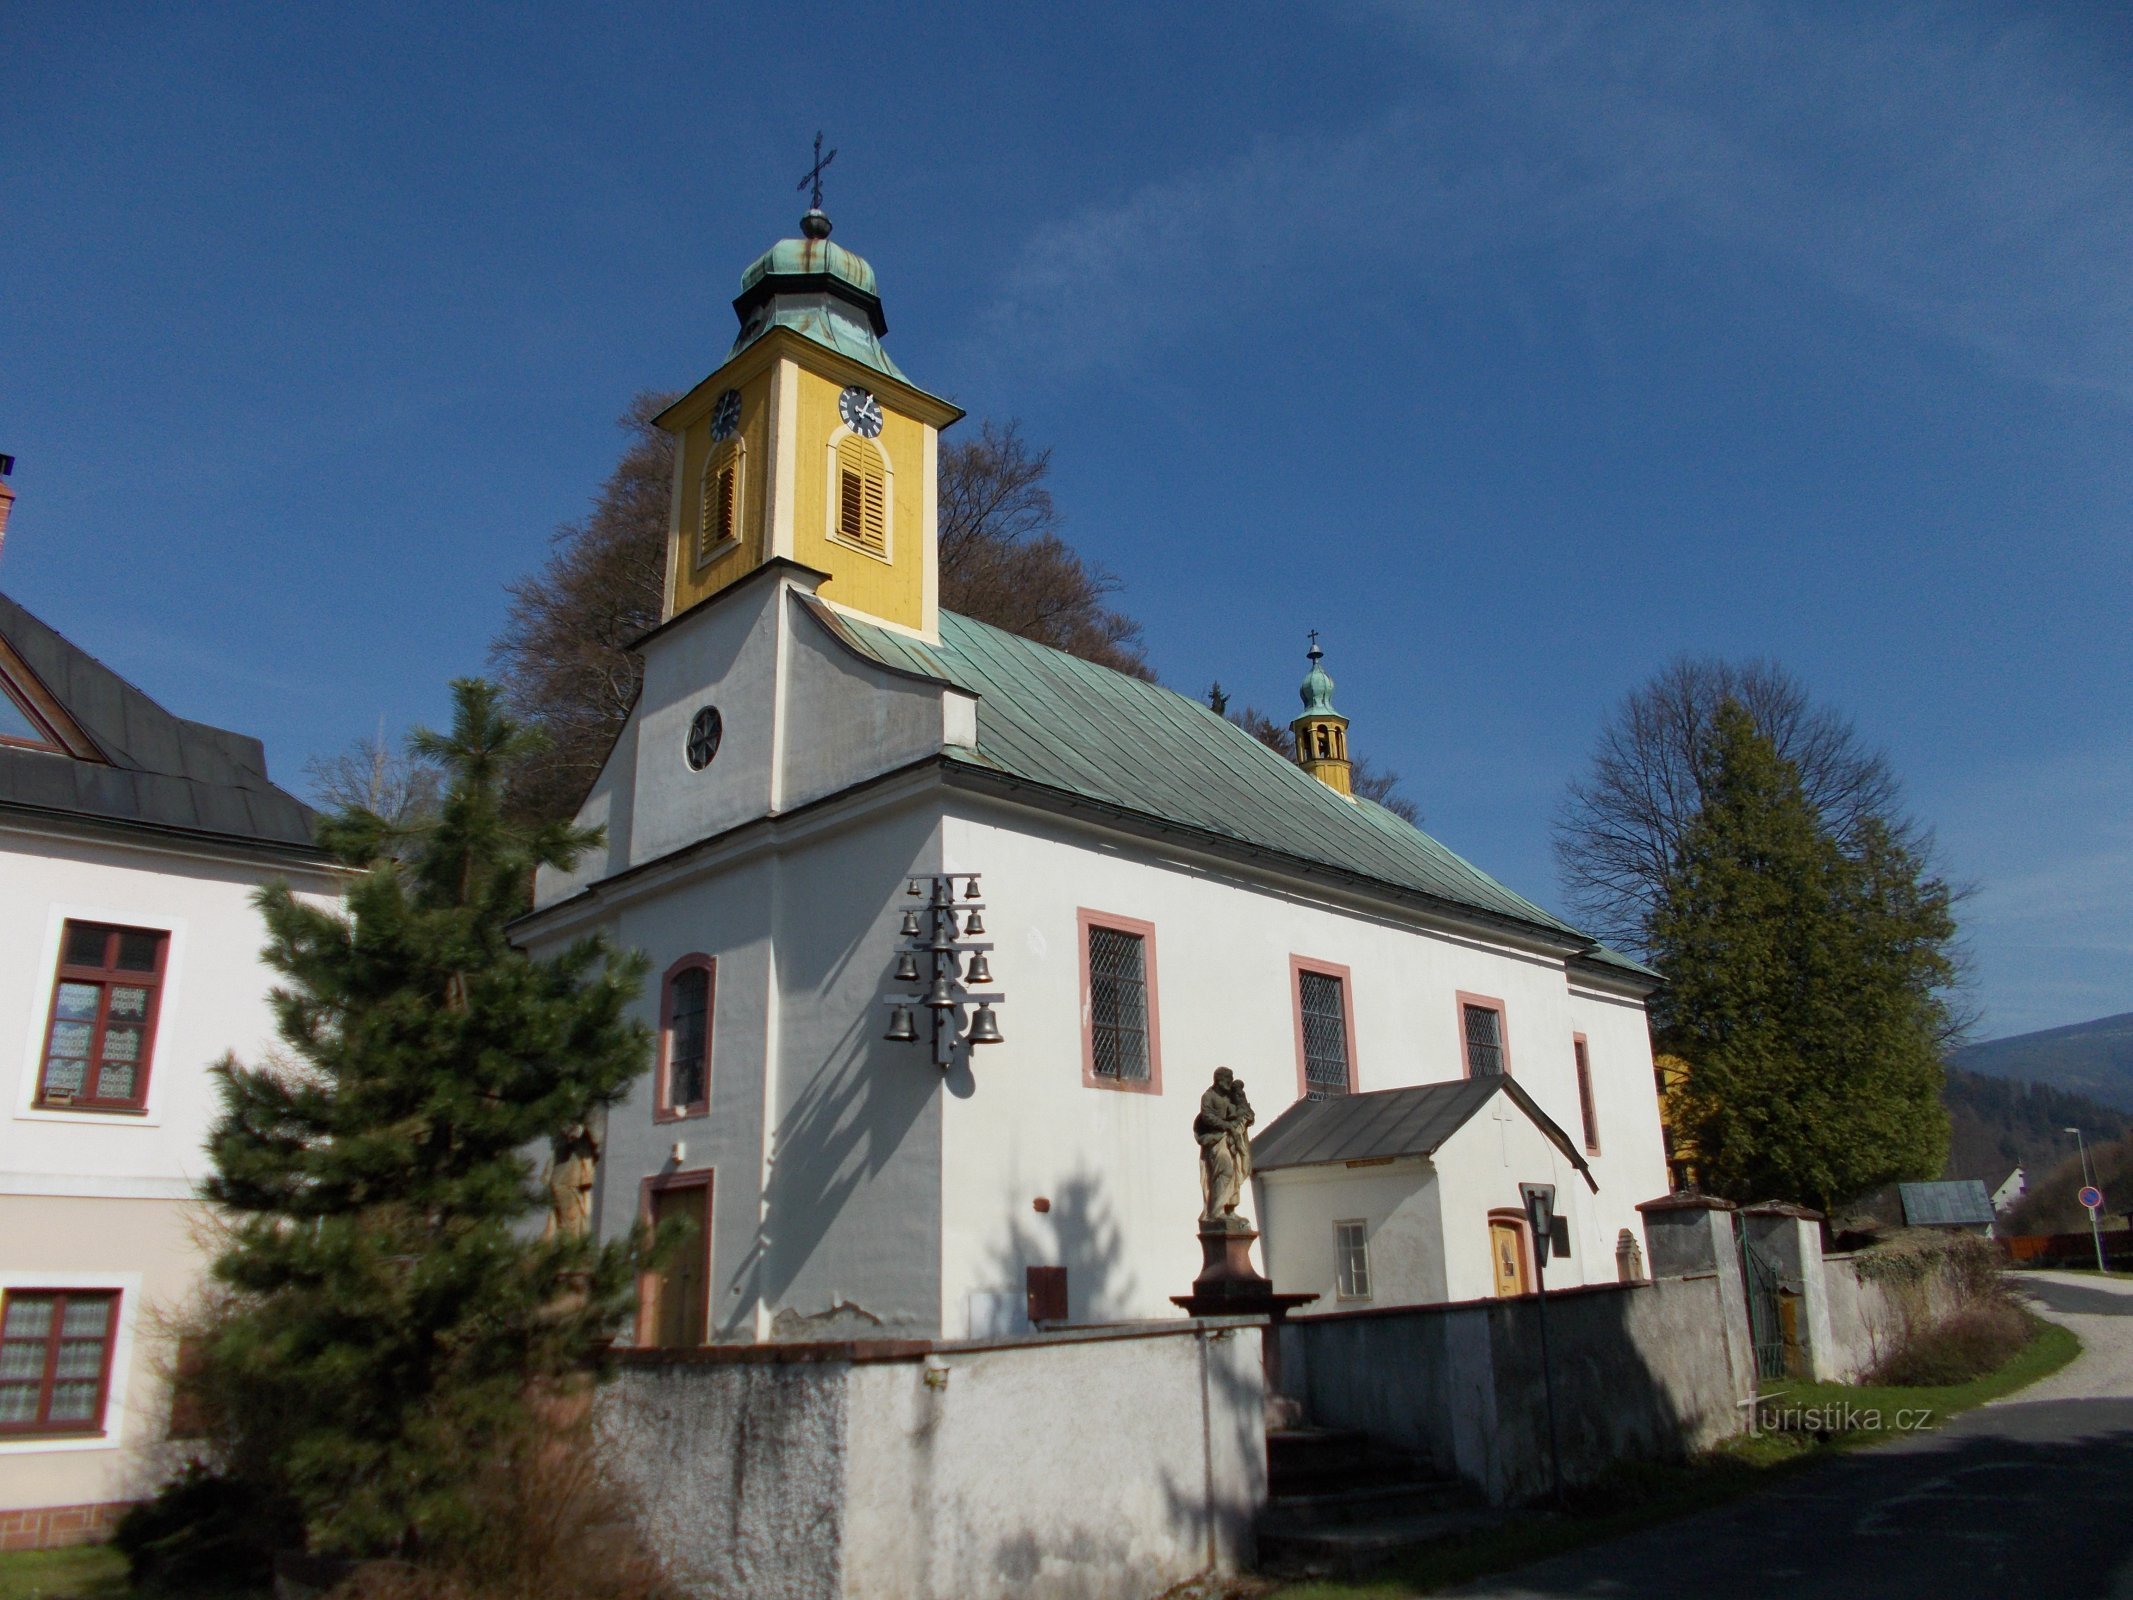 Dolní Dvůr - crkva sv. Josipa